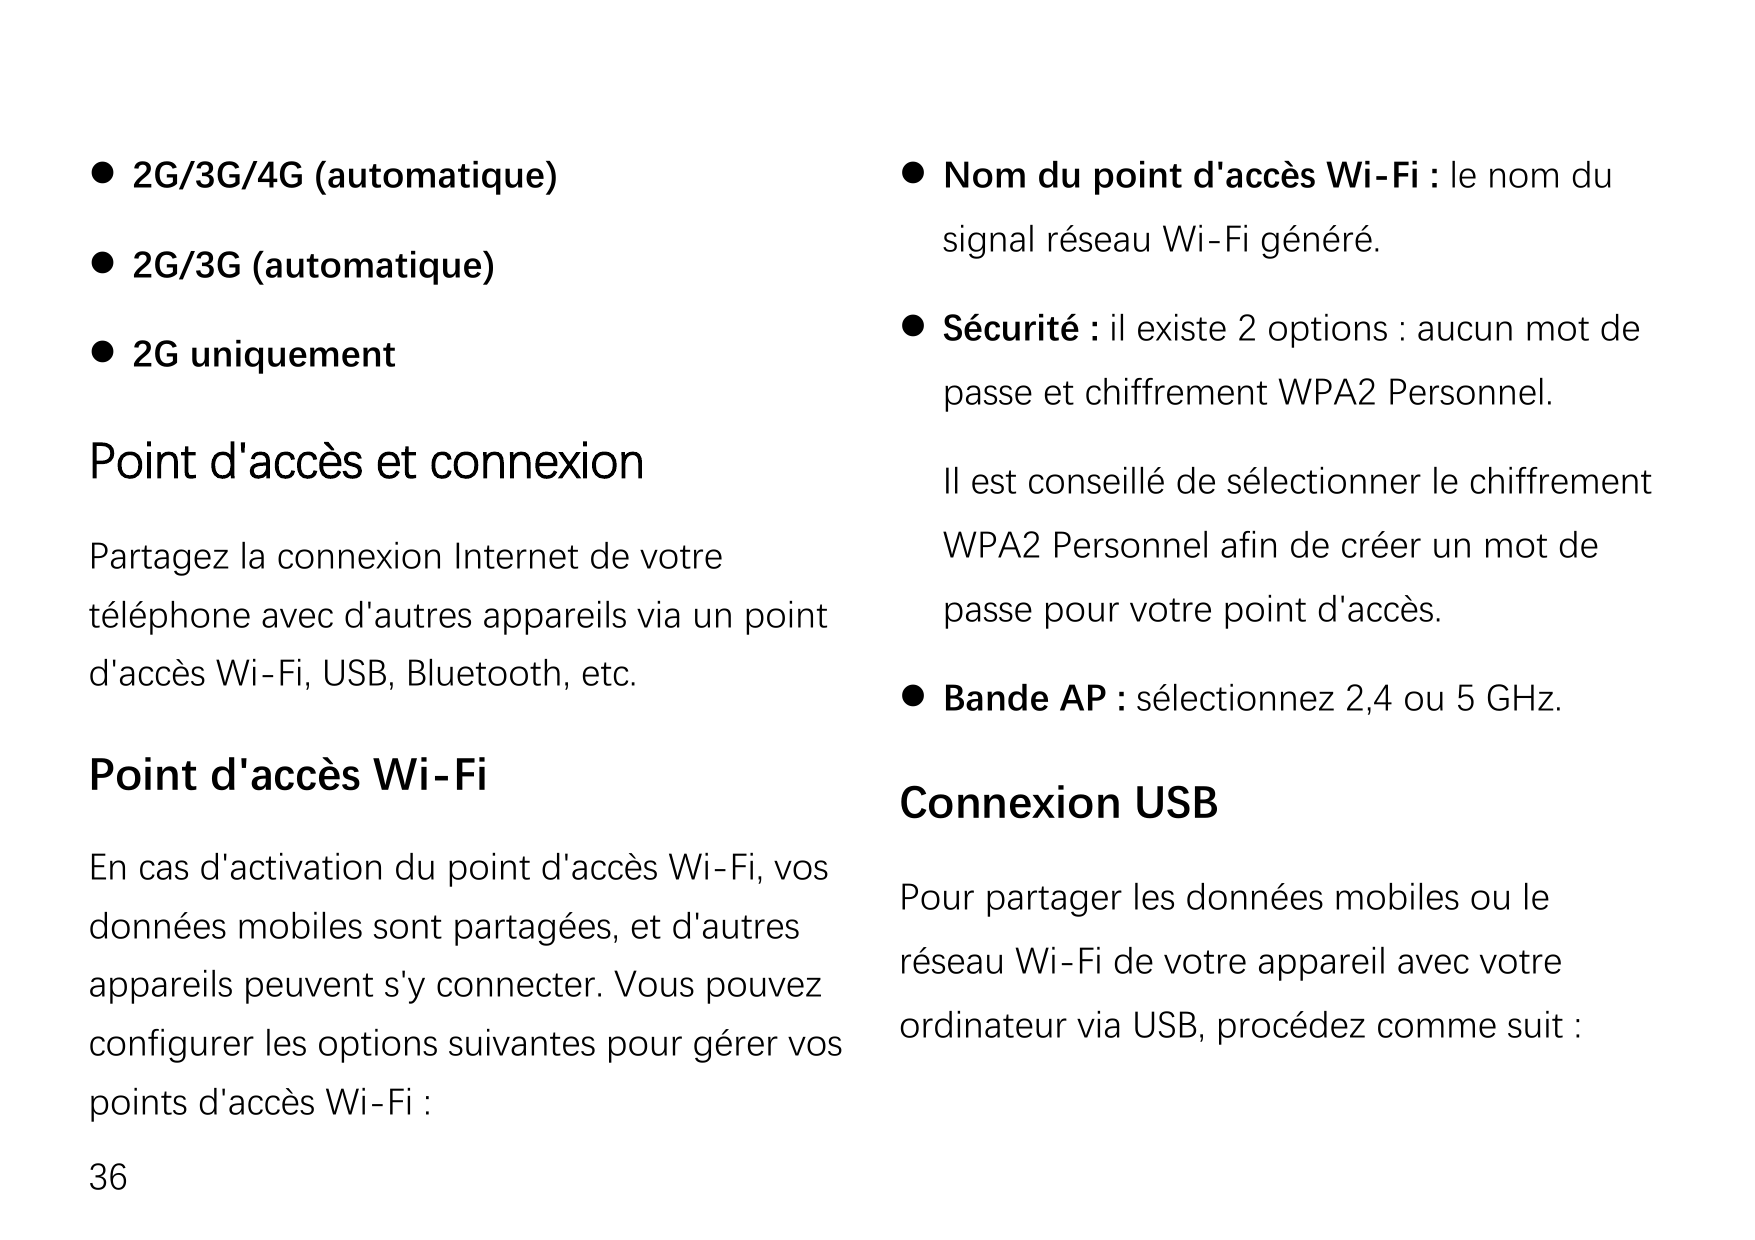  2G/3G/4G (automatique) 2G/3G (automatique) 2G uniquement Nom du point d'accès Wi-Fi : le nom dusignal réseau Wi-Fi généré.